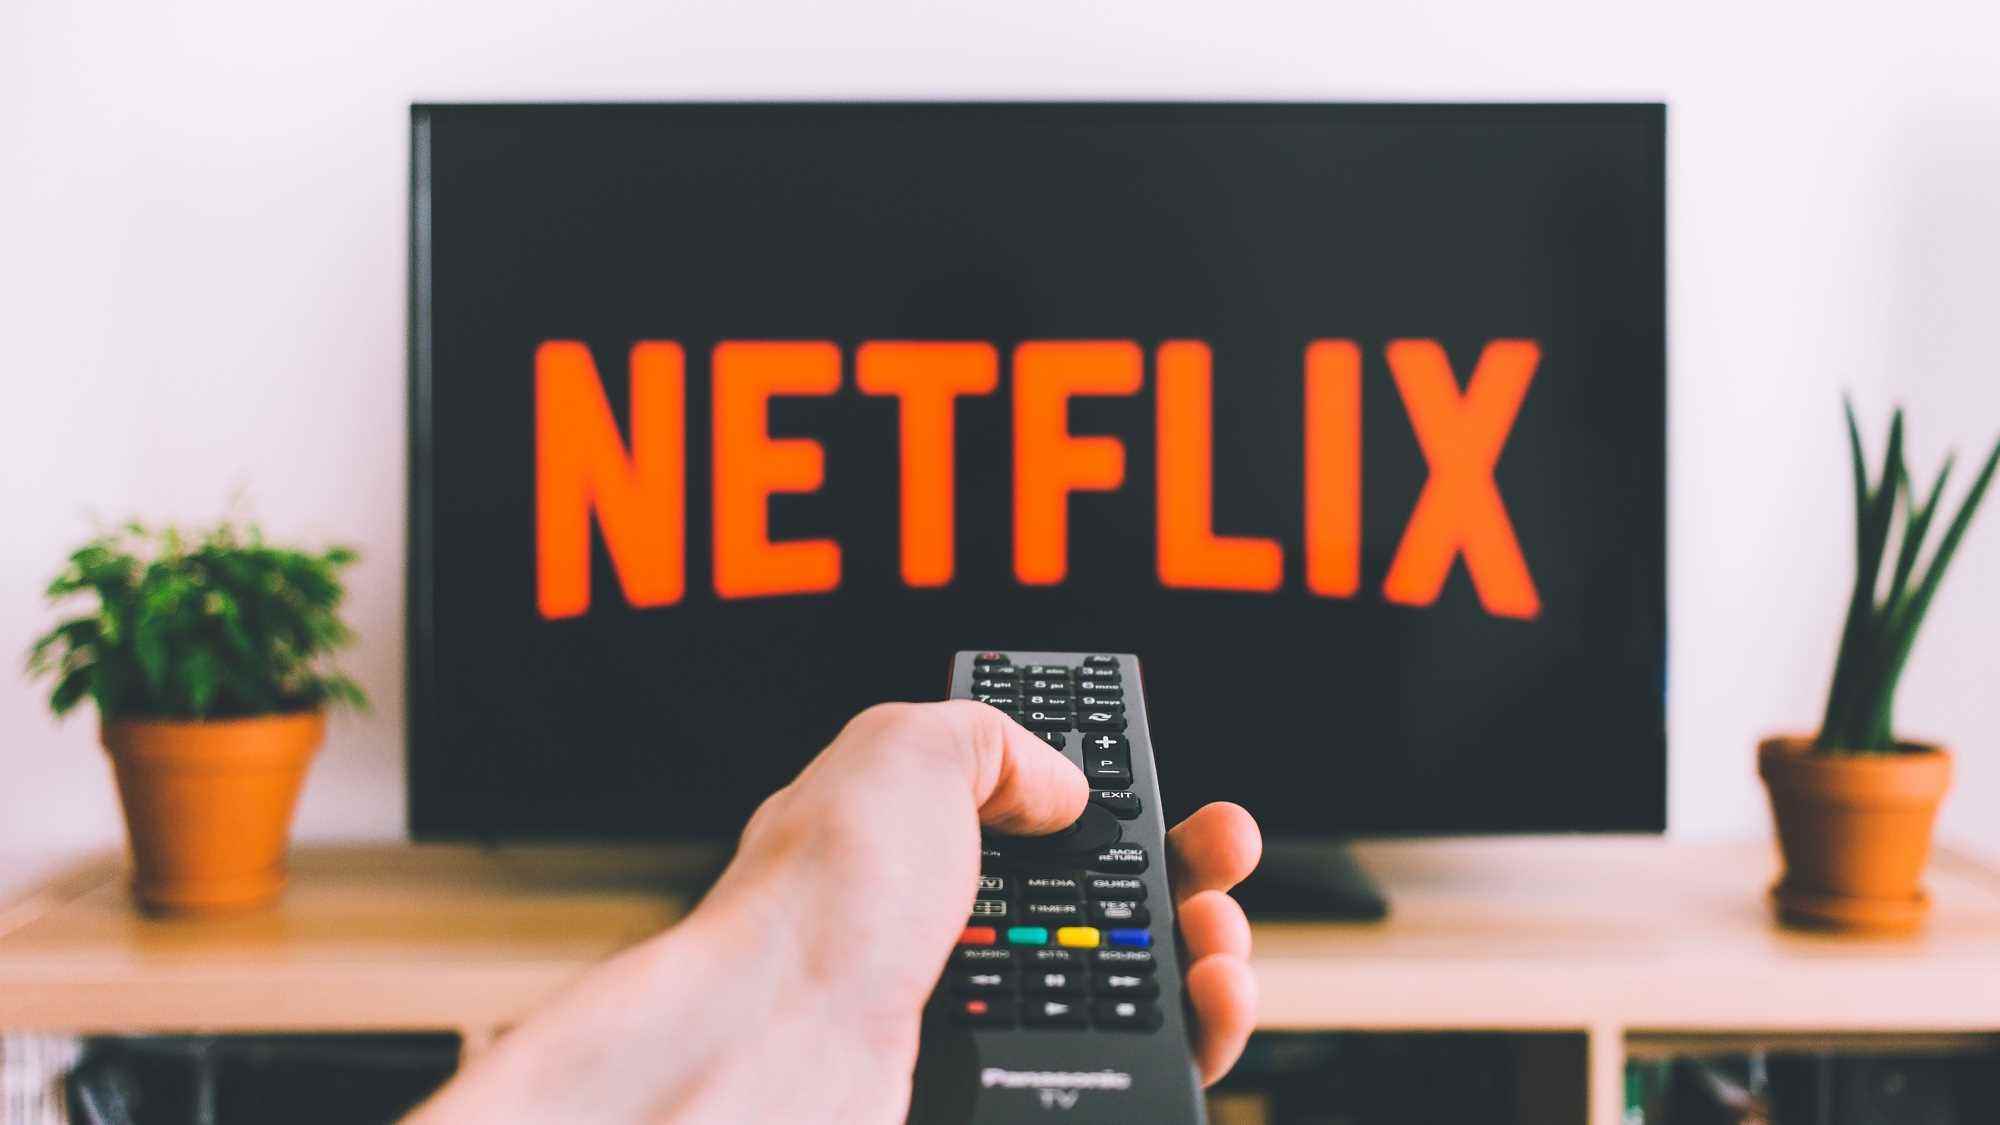 Netflix logolu bir ekrana doğrultulmuş TV uzaktan kumandası